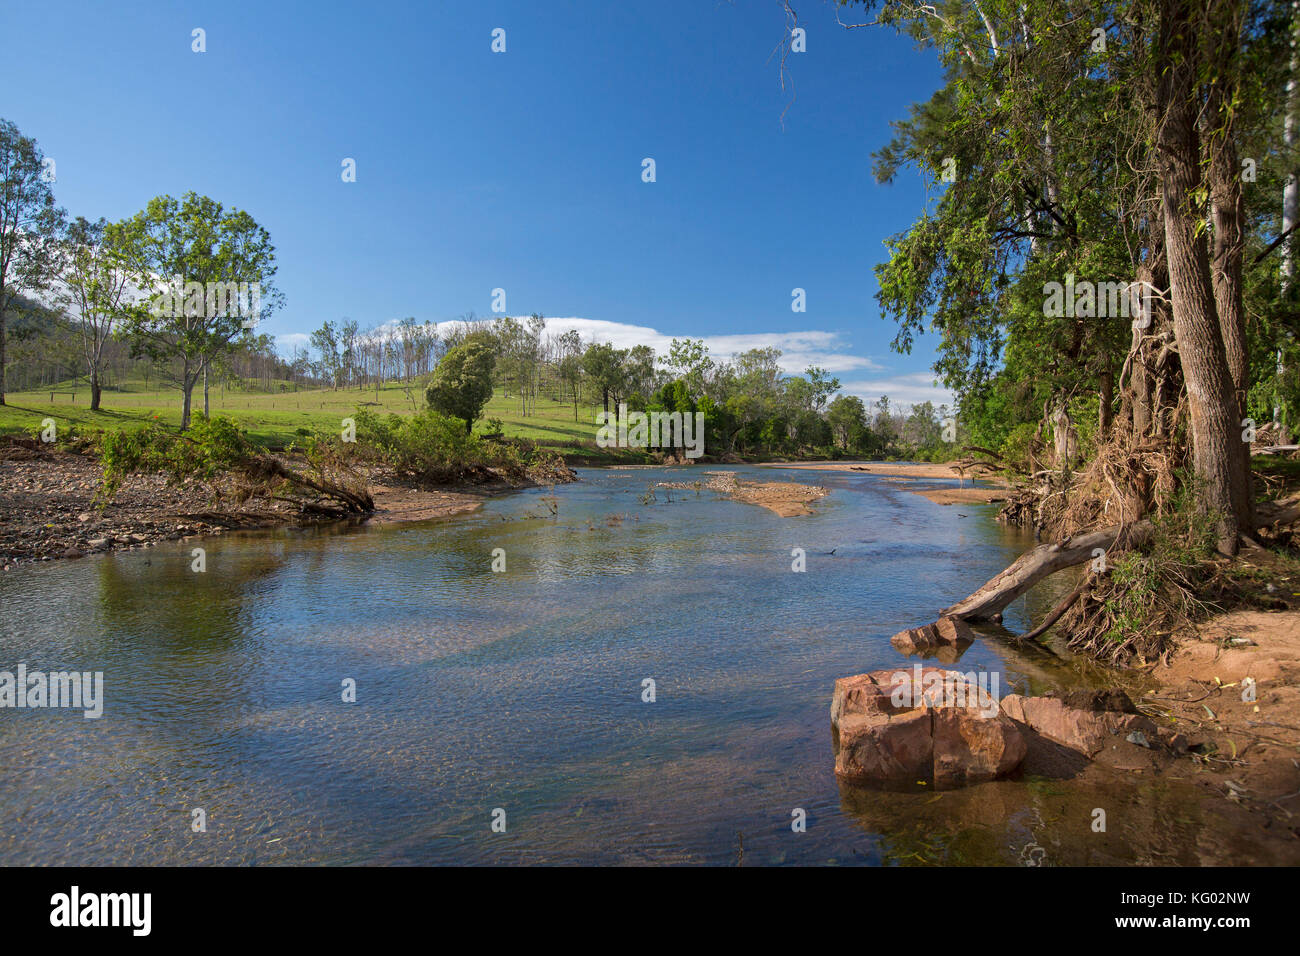 Bunte australische Landschaft mit flachen blauen Wassern des Boyne River von Wäldern und grünen und grasigen Hang unter blauem Himmel gesäumt Stockfoto